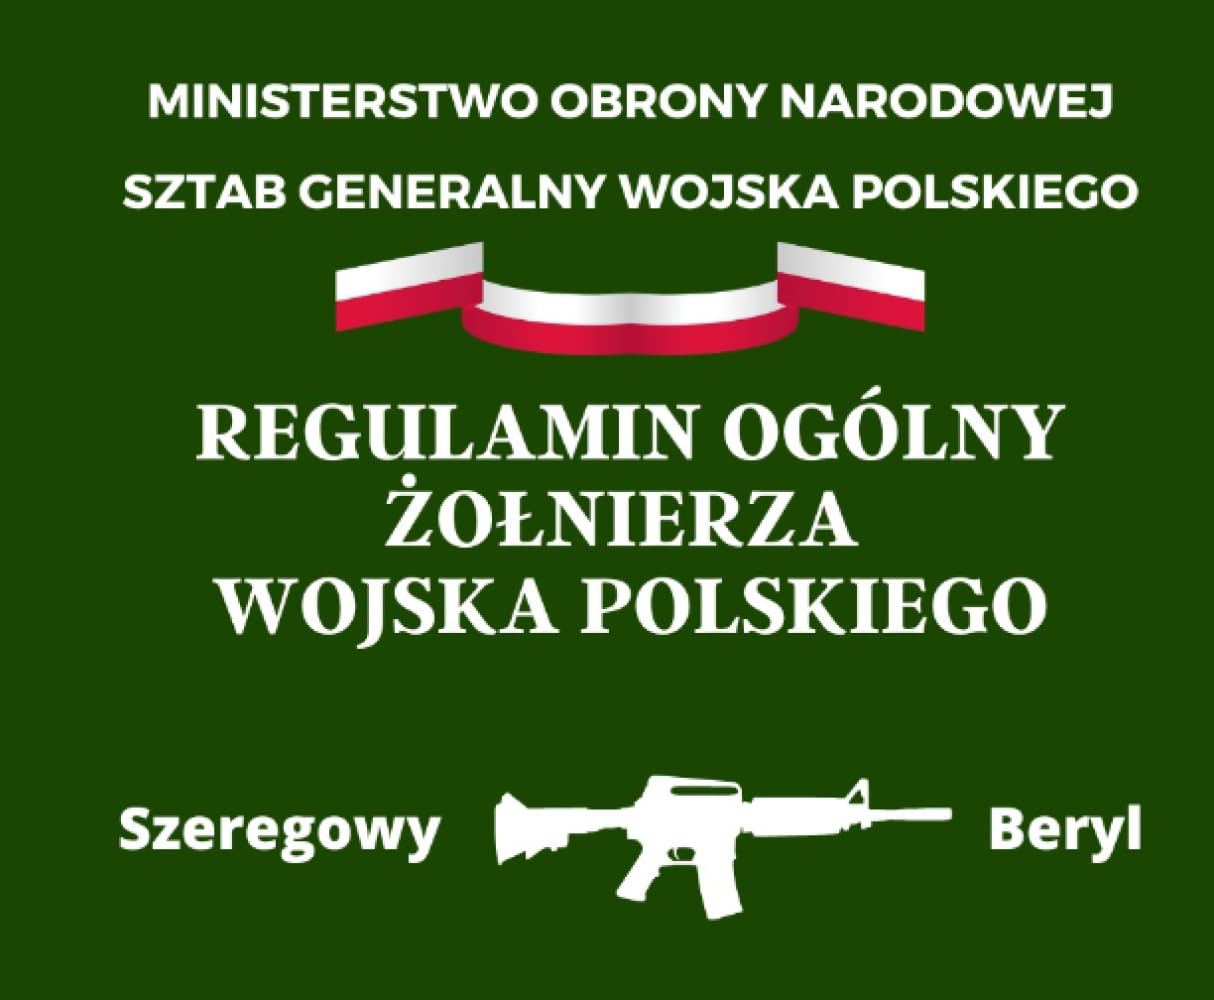 Regulamin ogólny żołnierza Wojska Polskiego (Polish Edition)